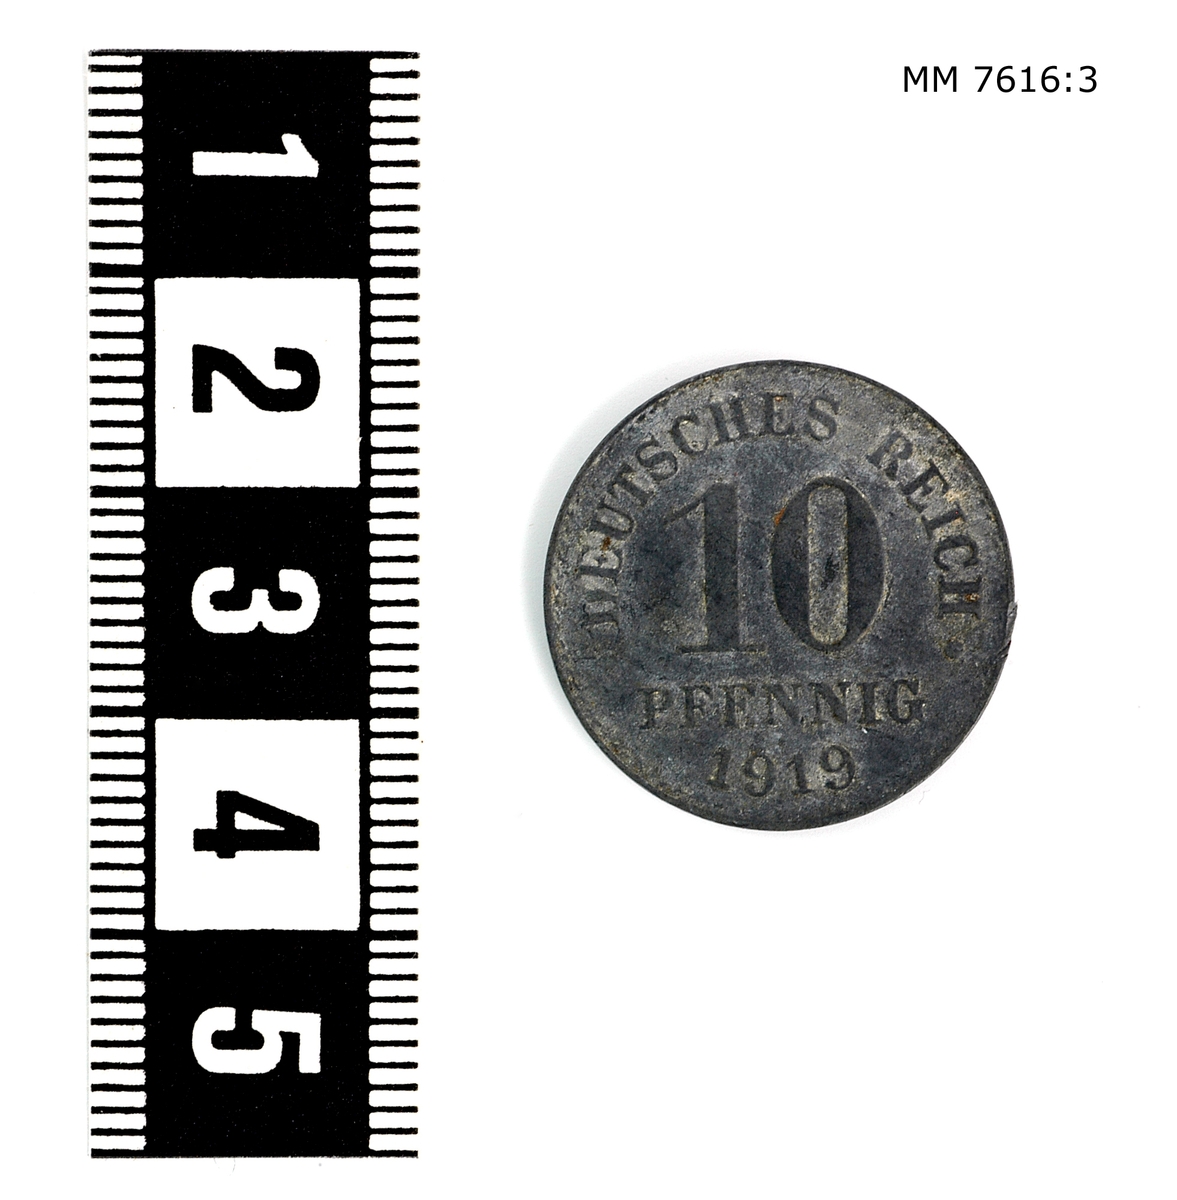 Mynt av järn, 10 pfennig Tyskland. Präglad på ena sidan: figur av en örn, på andra sidan: "Deutsches reich 10 pfennig 1919".